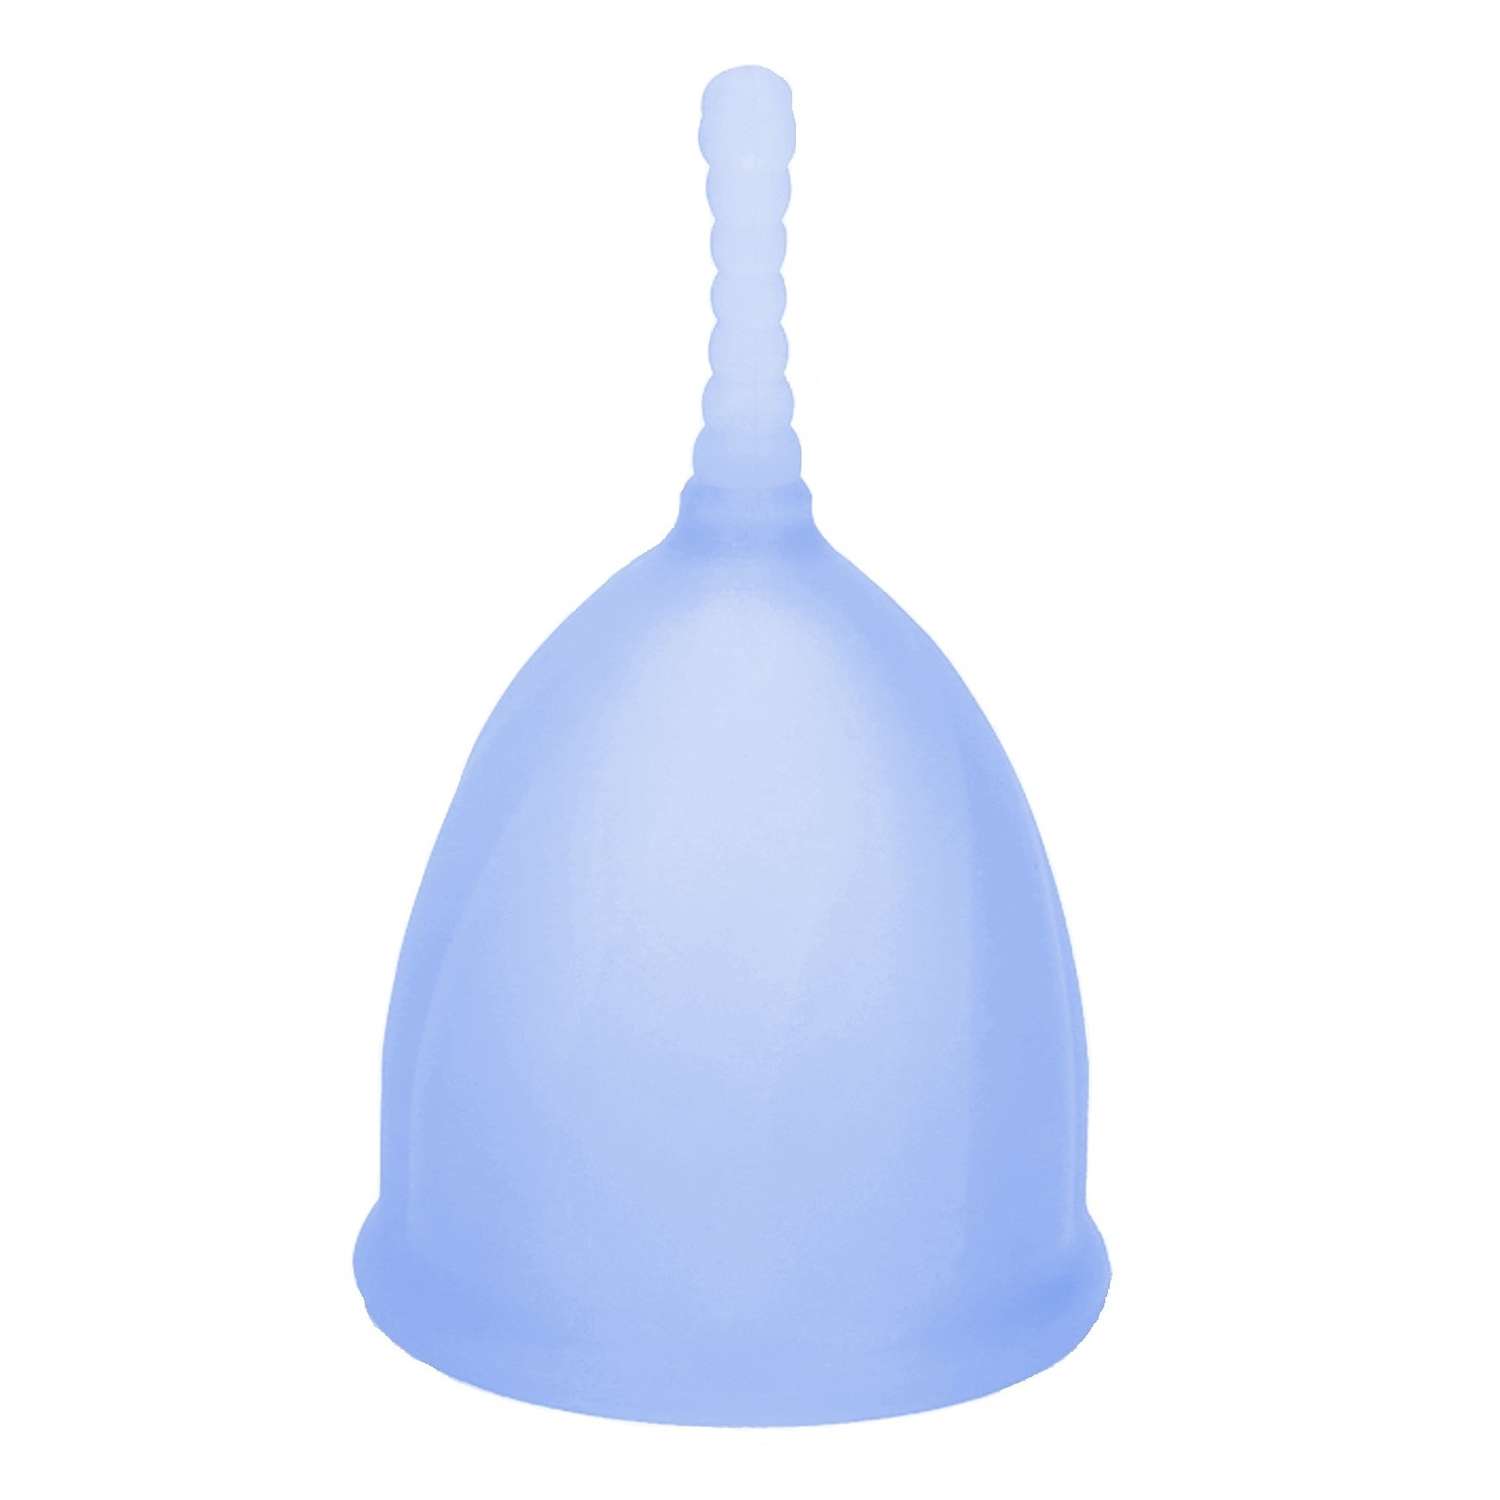 Менструальная чаша NDCG Comfort Cup размер M голубой - фото 2